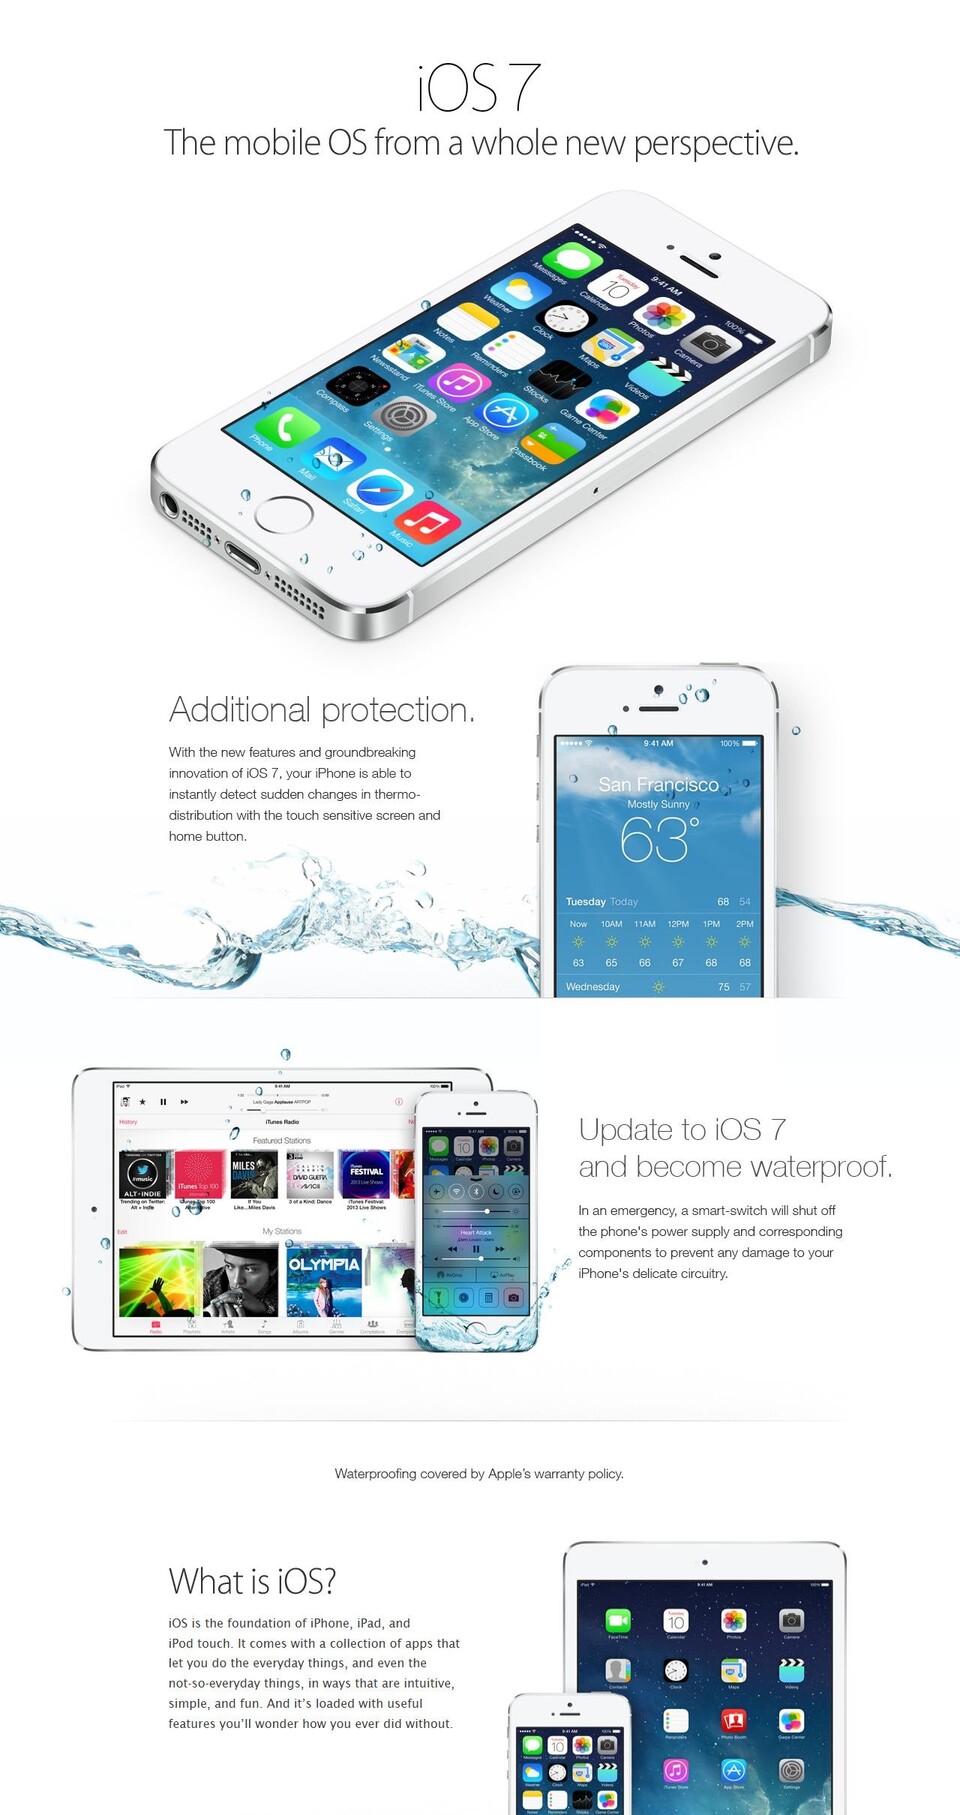 Mancher Apple-User glaubte der Fake-Anzeige tatsächlich – als ob ein Software-Update das Gehäuse gegen Wasser abdichten könnte.